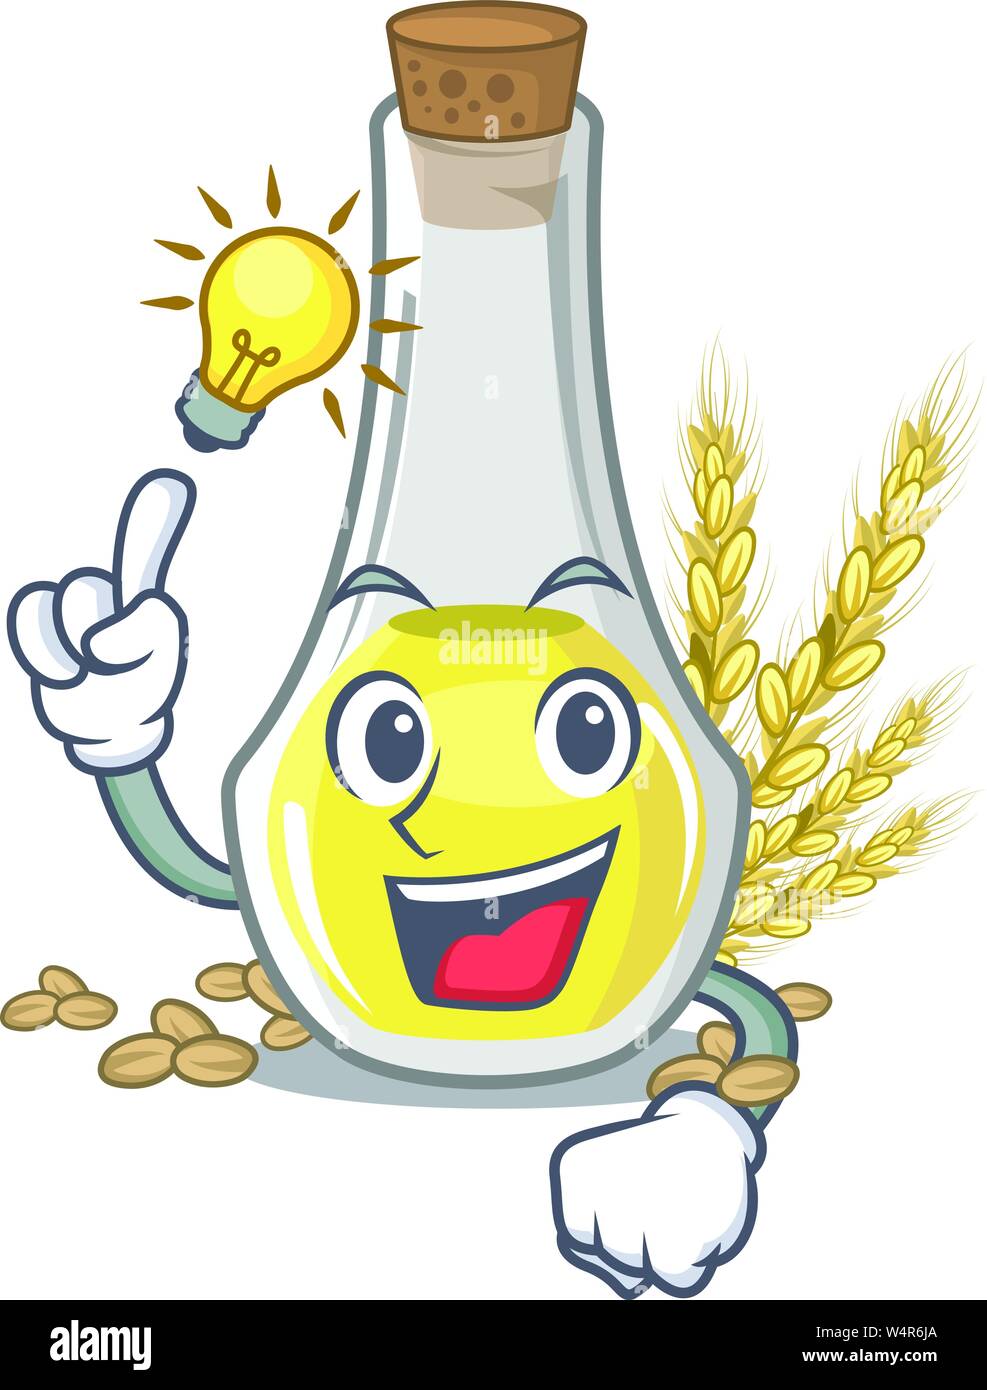 Have an idea wheat germ oil at cartoon table vector illustration Stock Vector